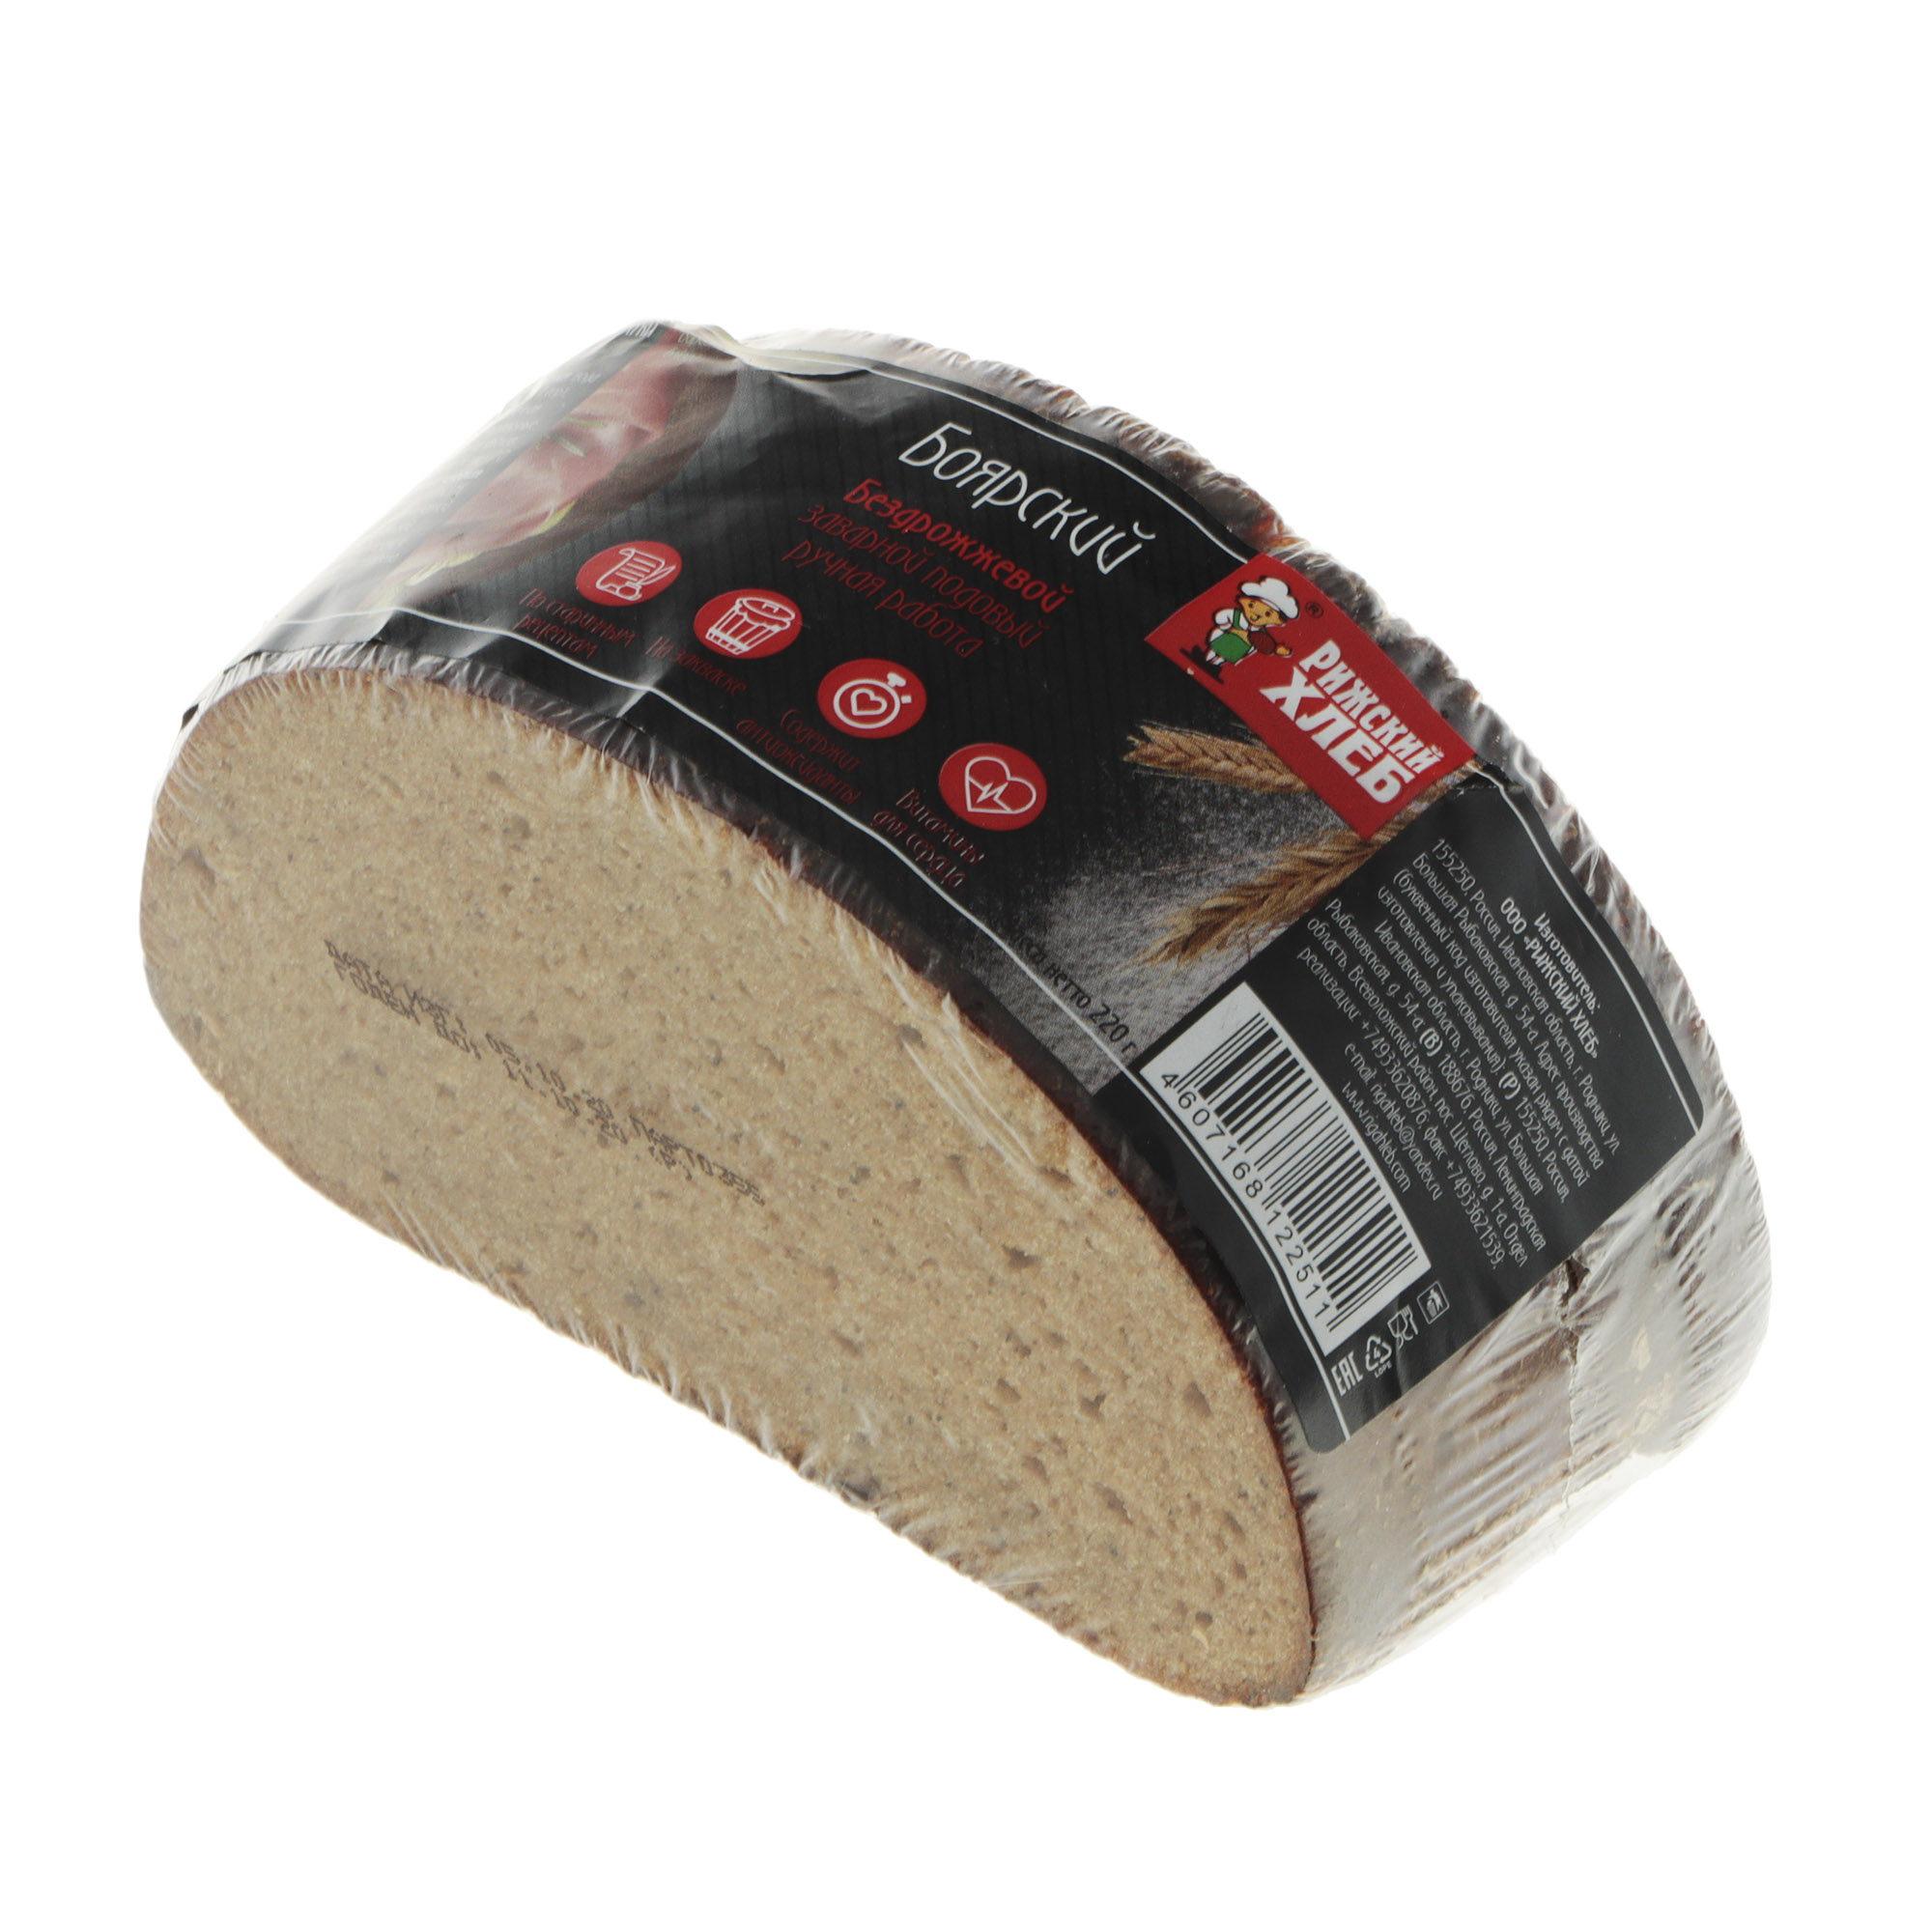 Хлеб Рижский хлеб боярский 220 г хлеб рижский хлеб полбяной цельнозерновой 270 г